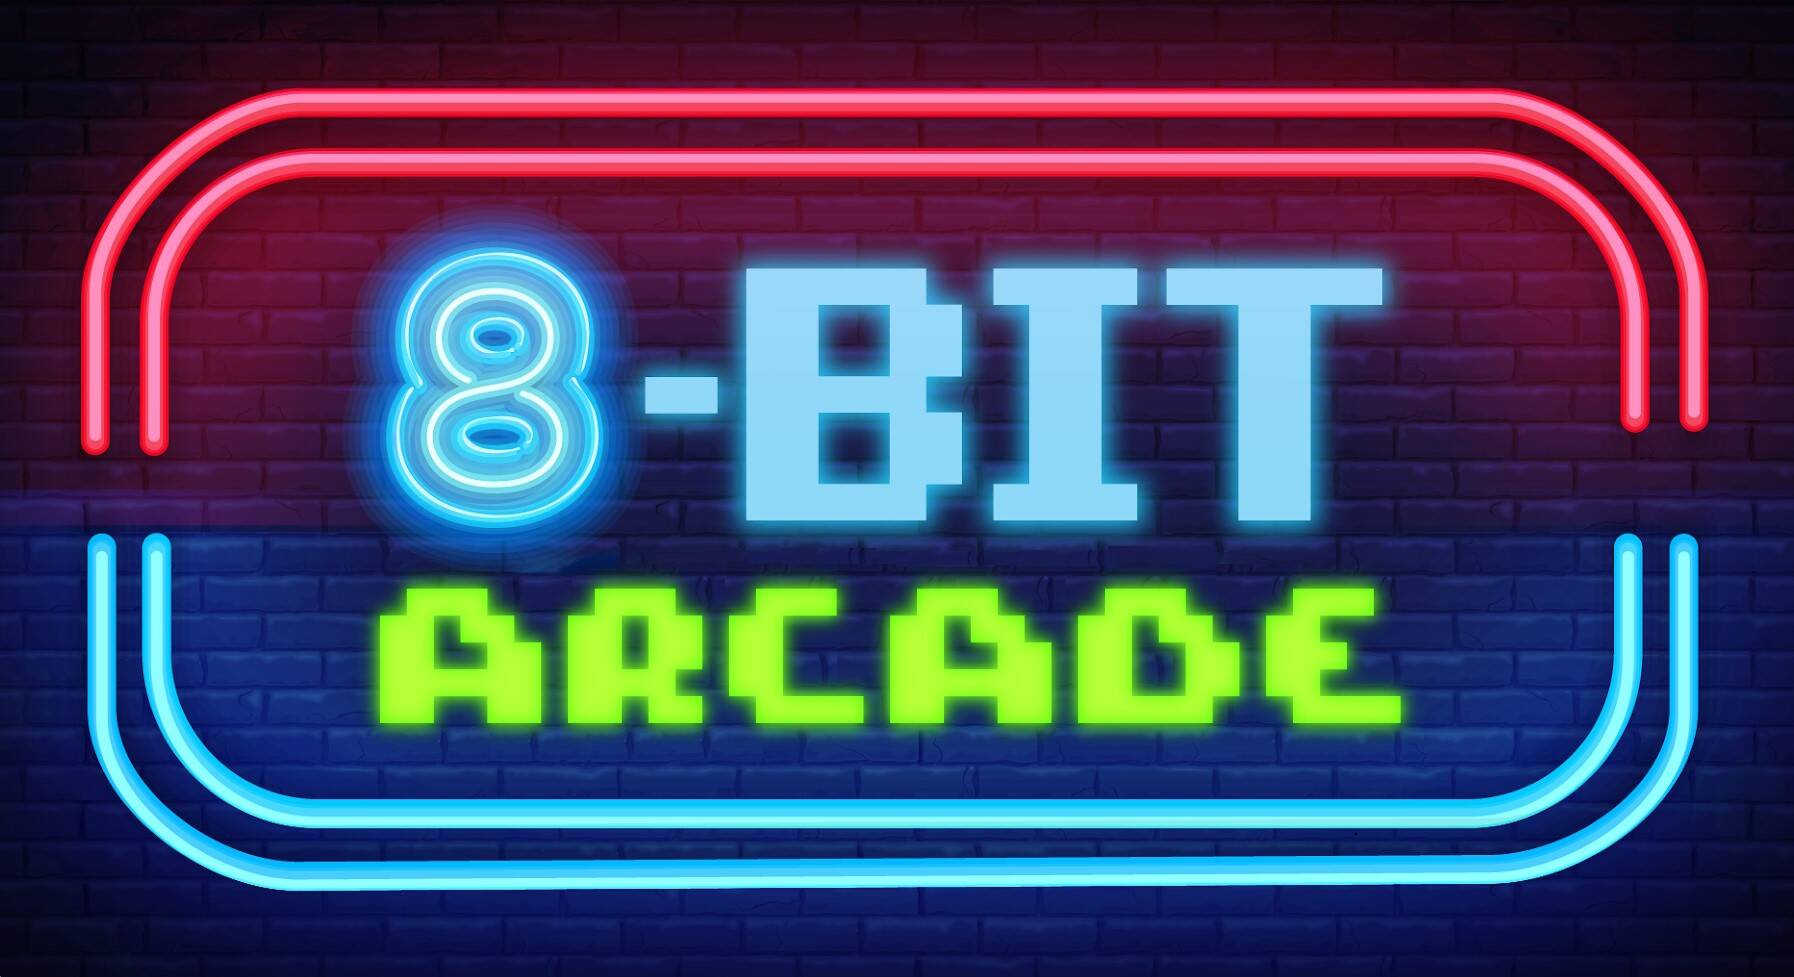 8-Bit Beans Cafe & Arcade